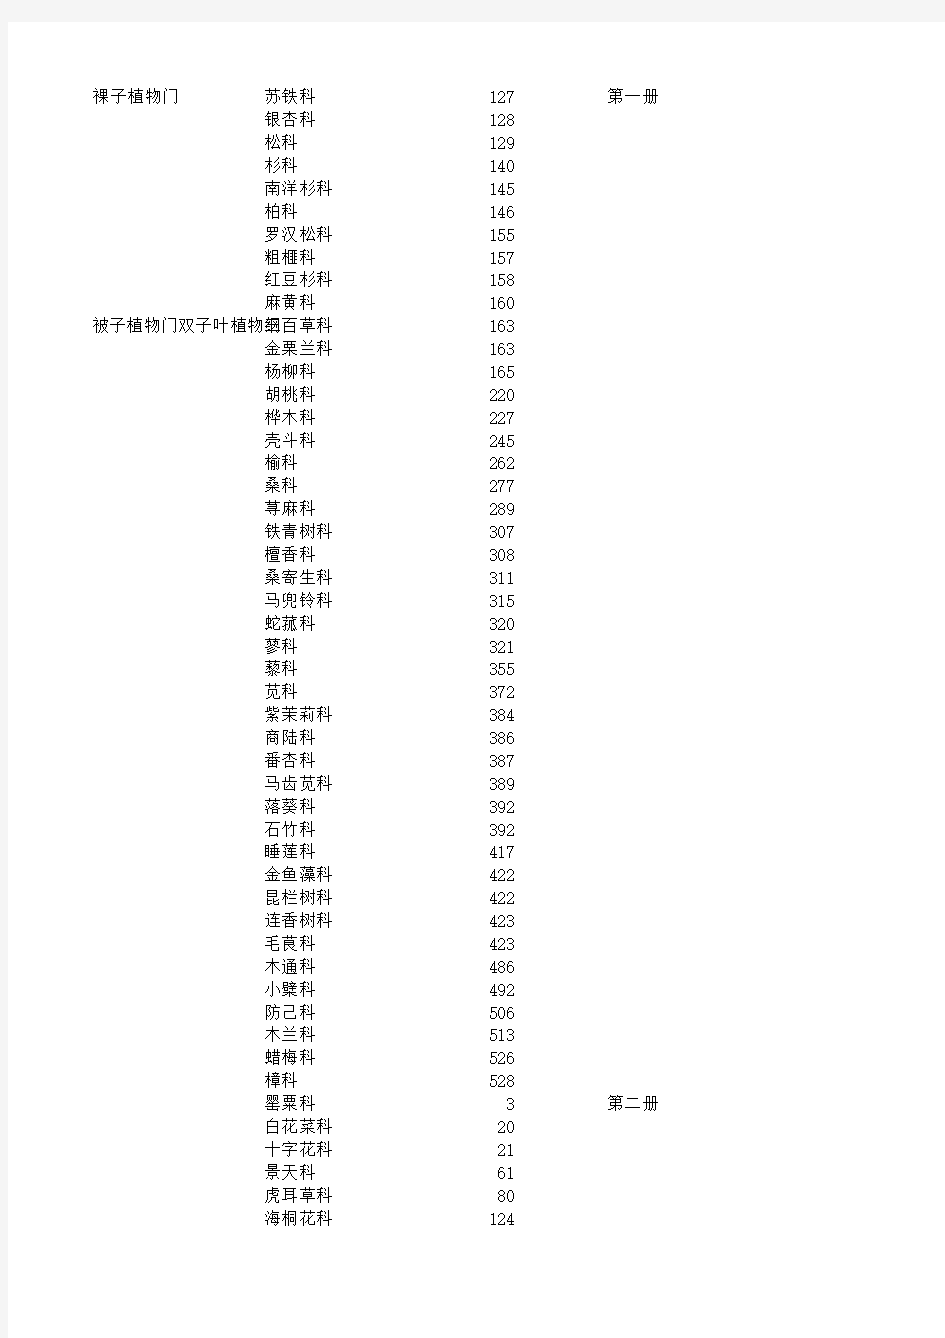 河南植物志科属所在页数对照表